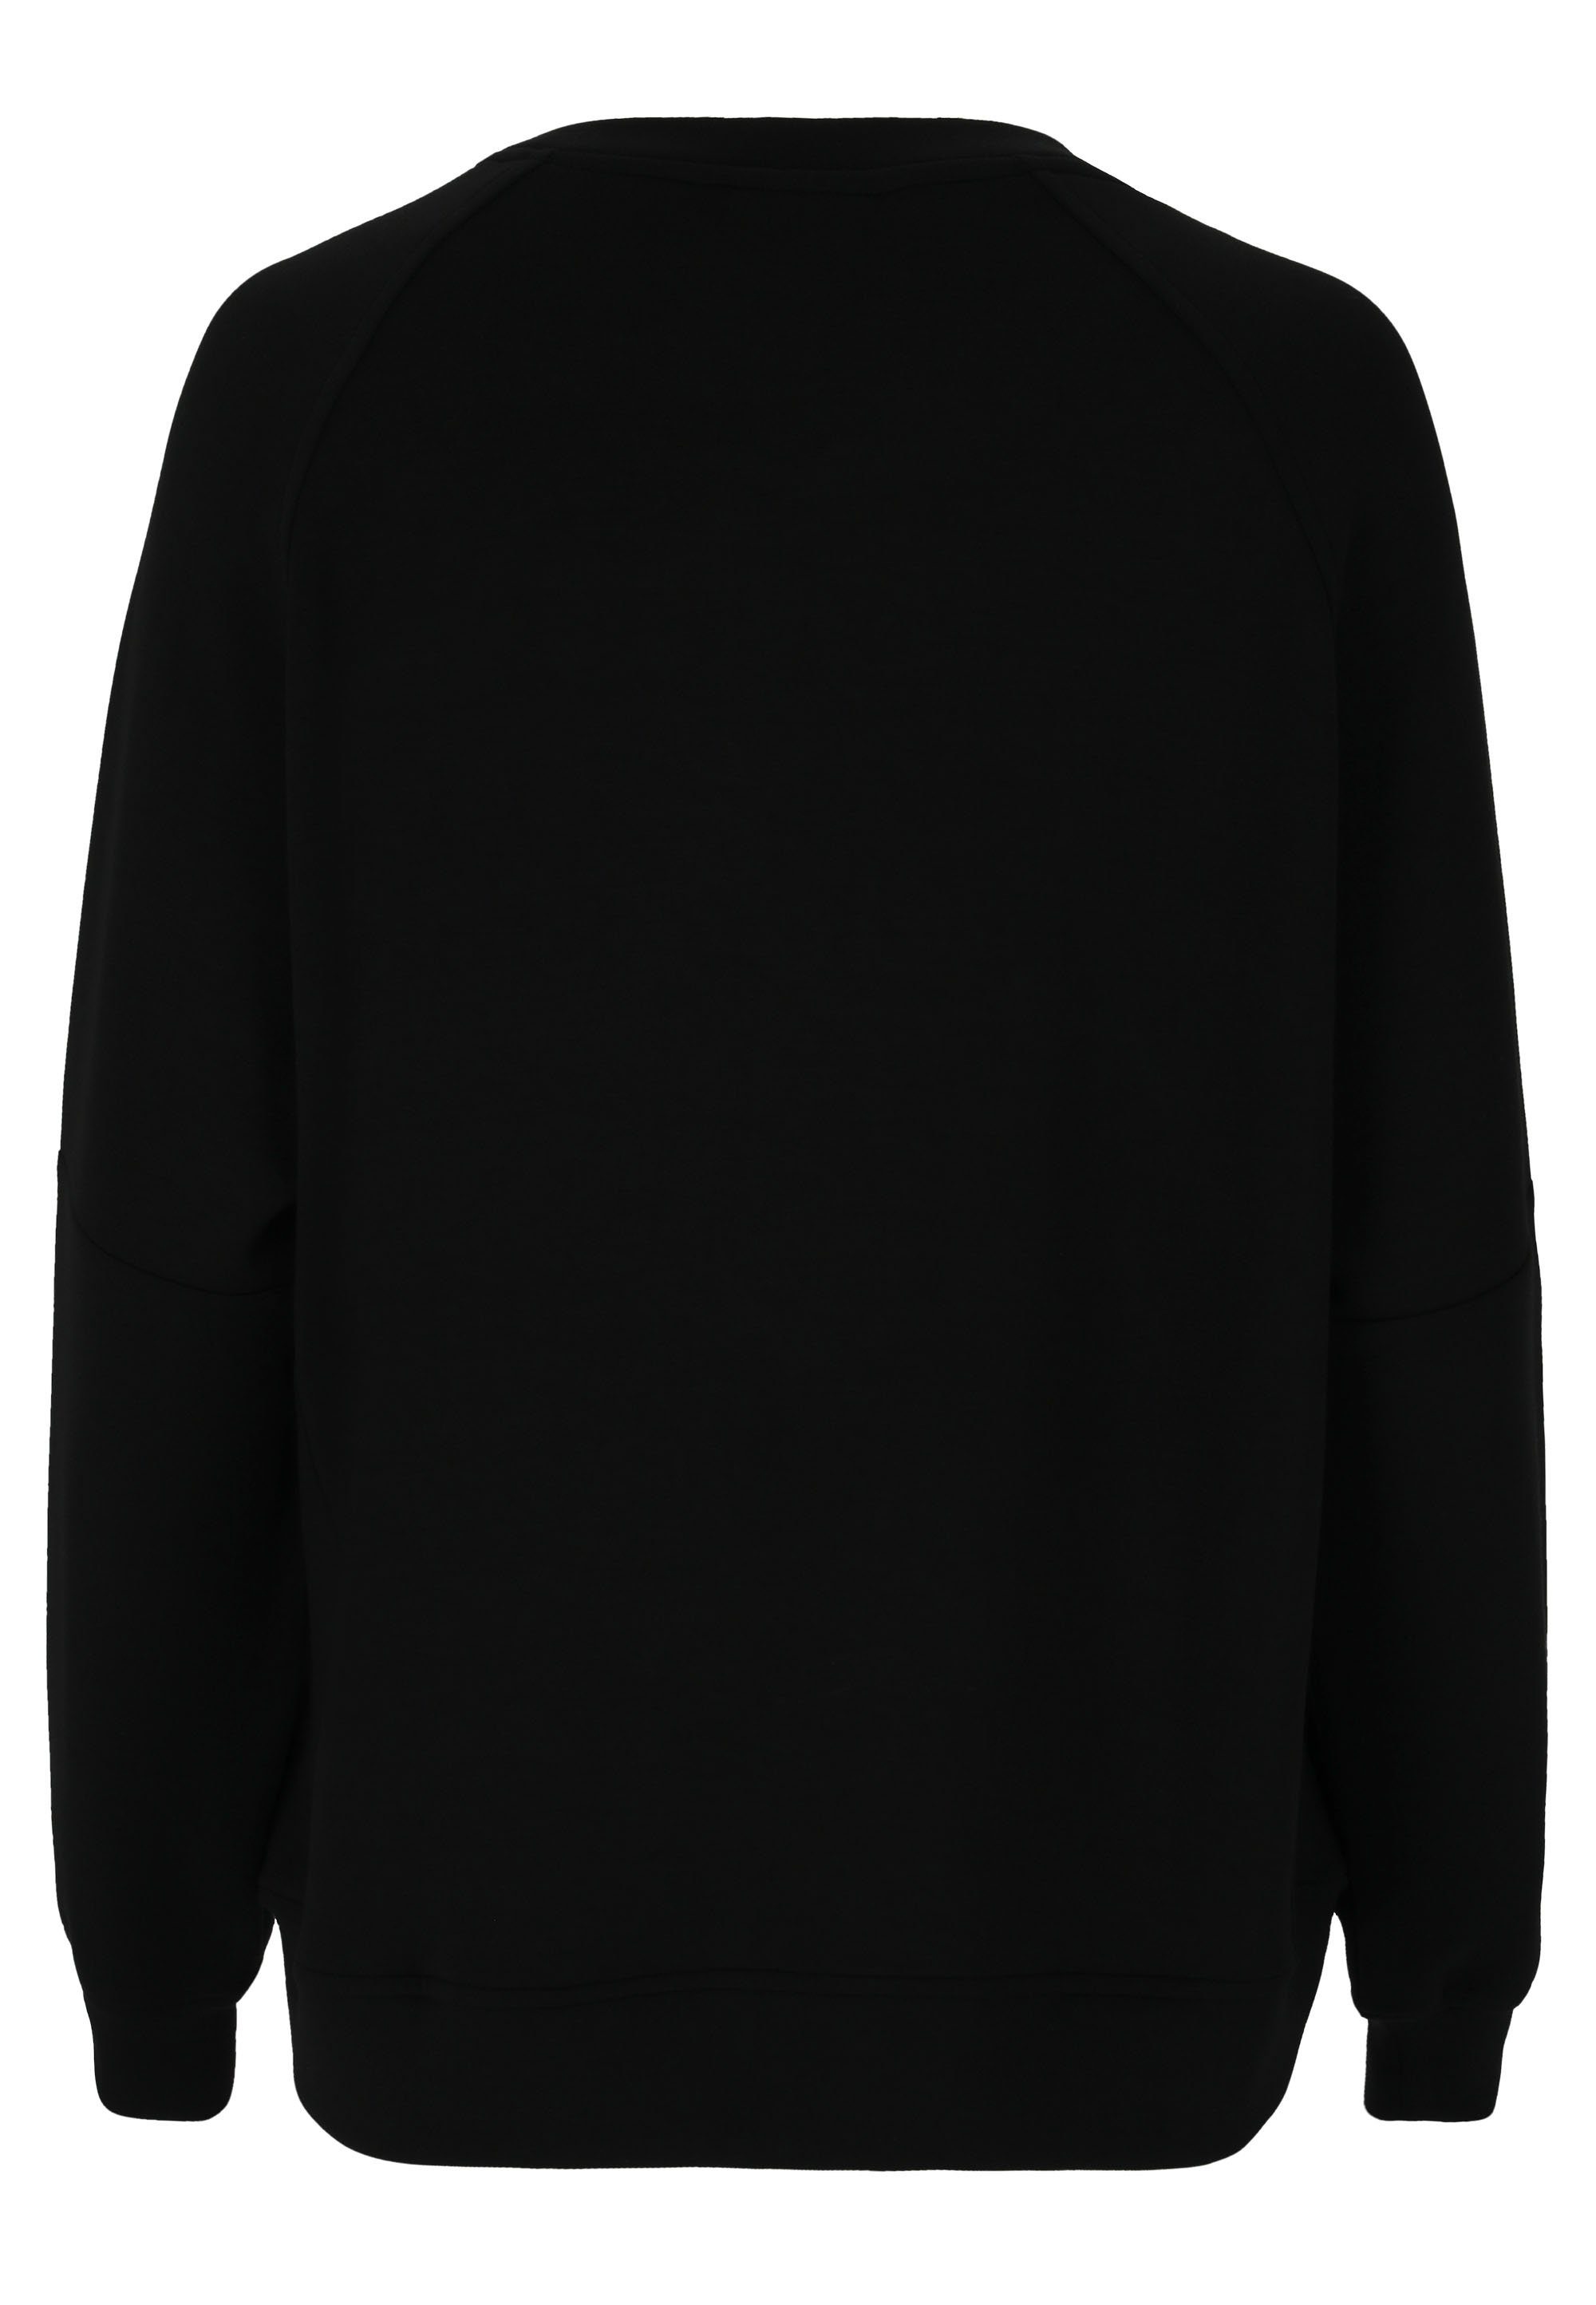 schwarz Material Sweatshirt Jacey aus weichem extra ATHLECIA